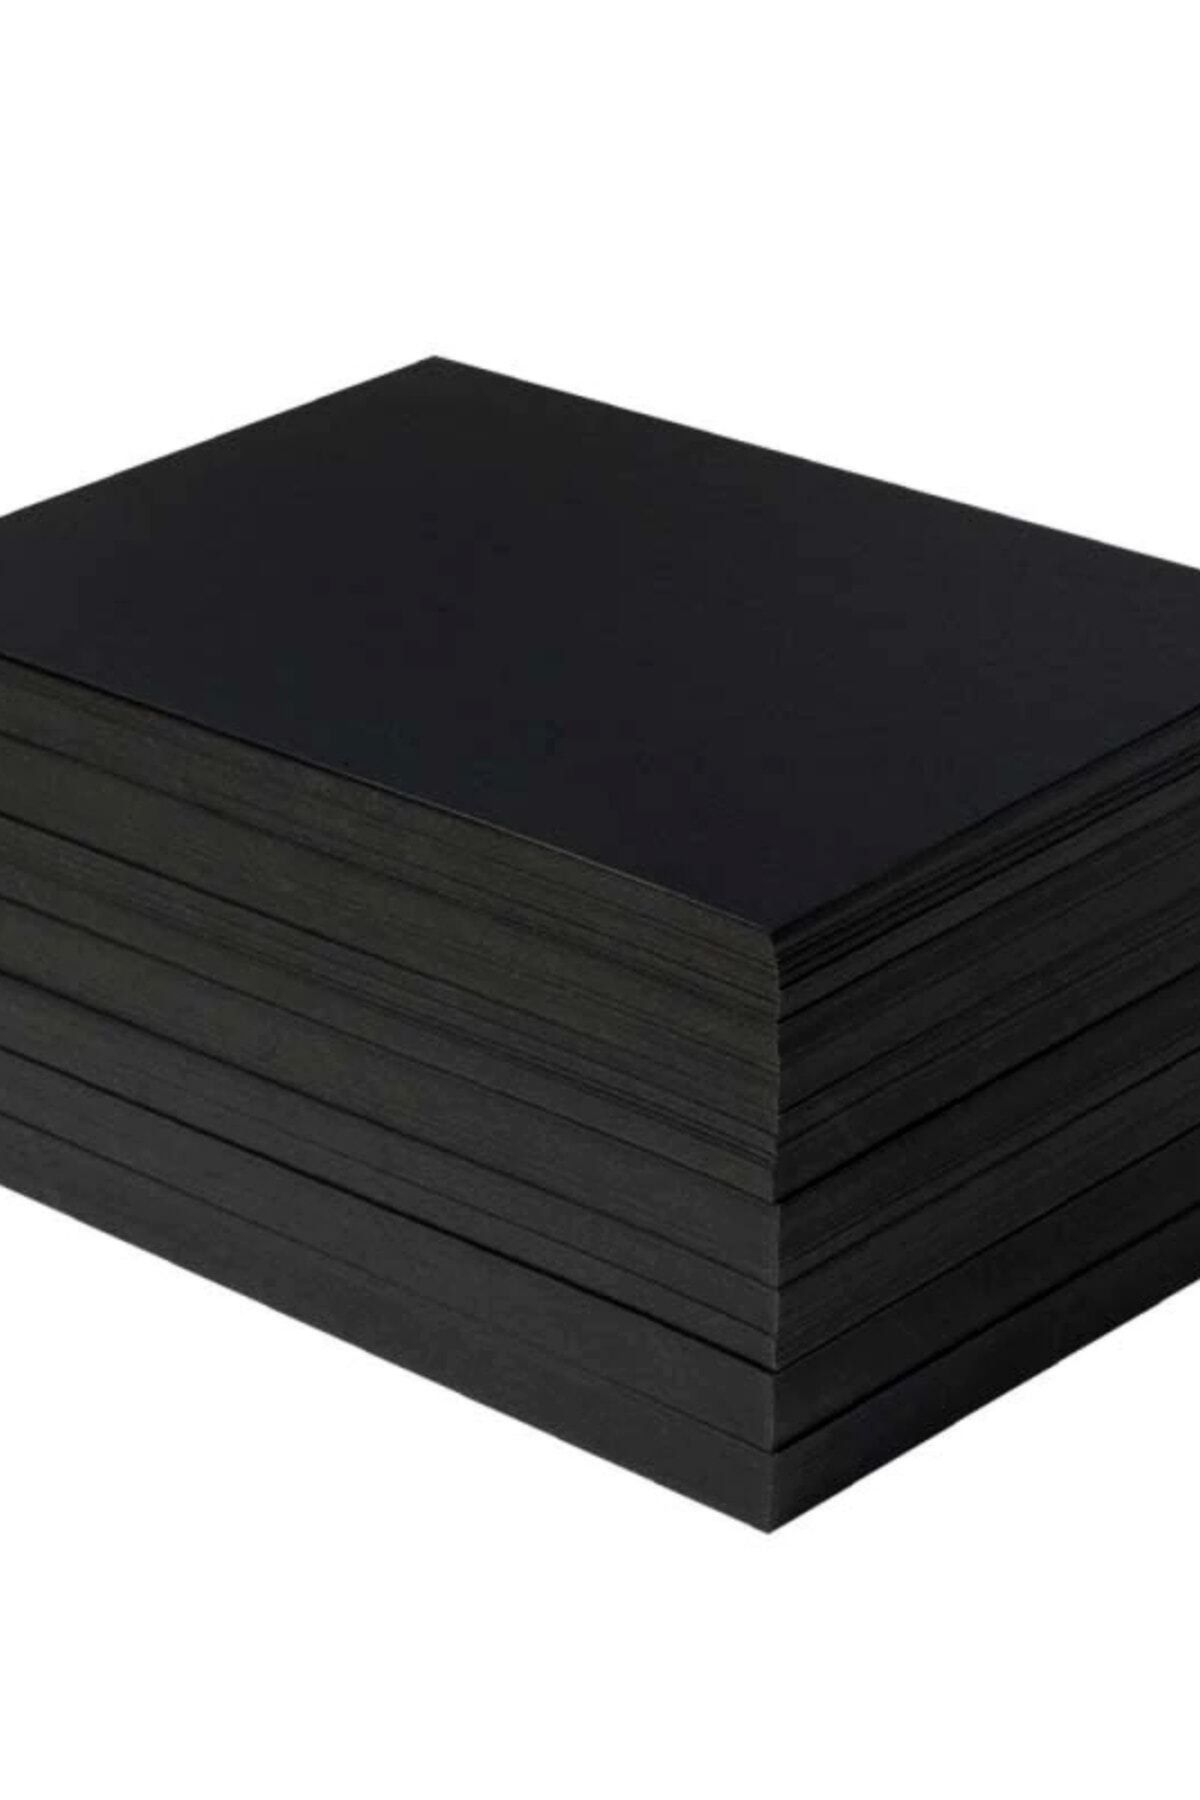 Paperart A4 Fotokopi Kagidi Renkli 200 Lü Paket Siyah